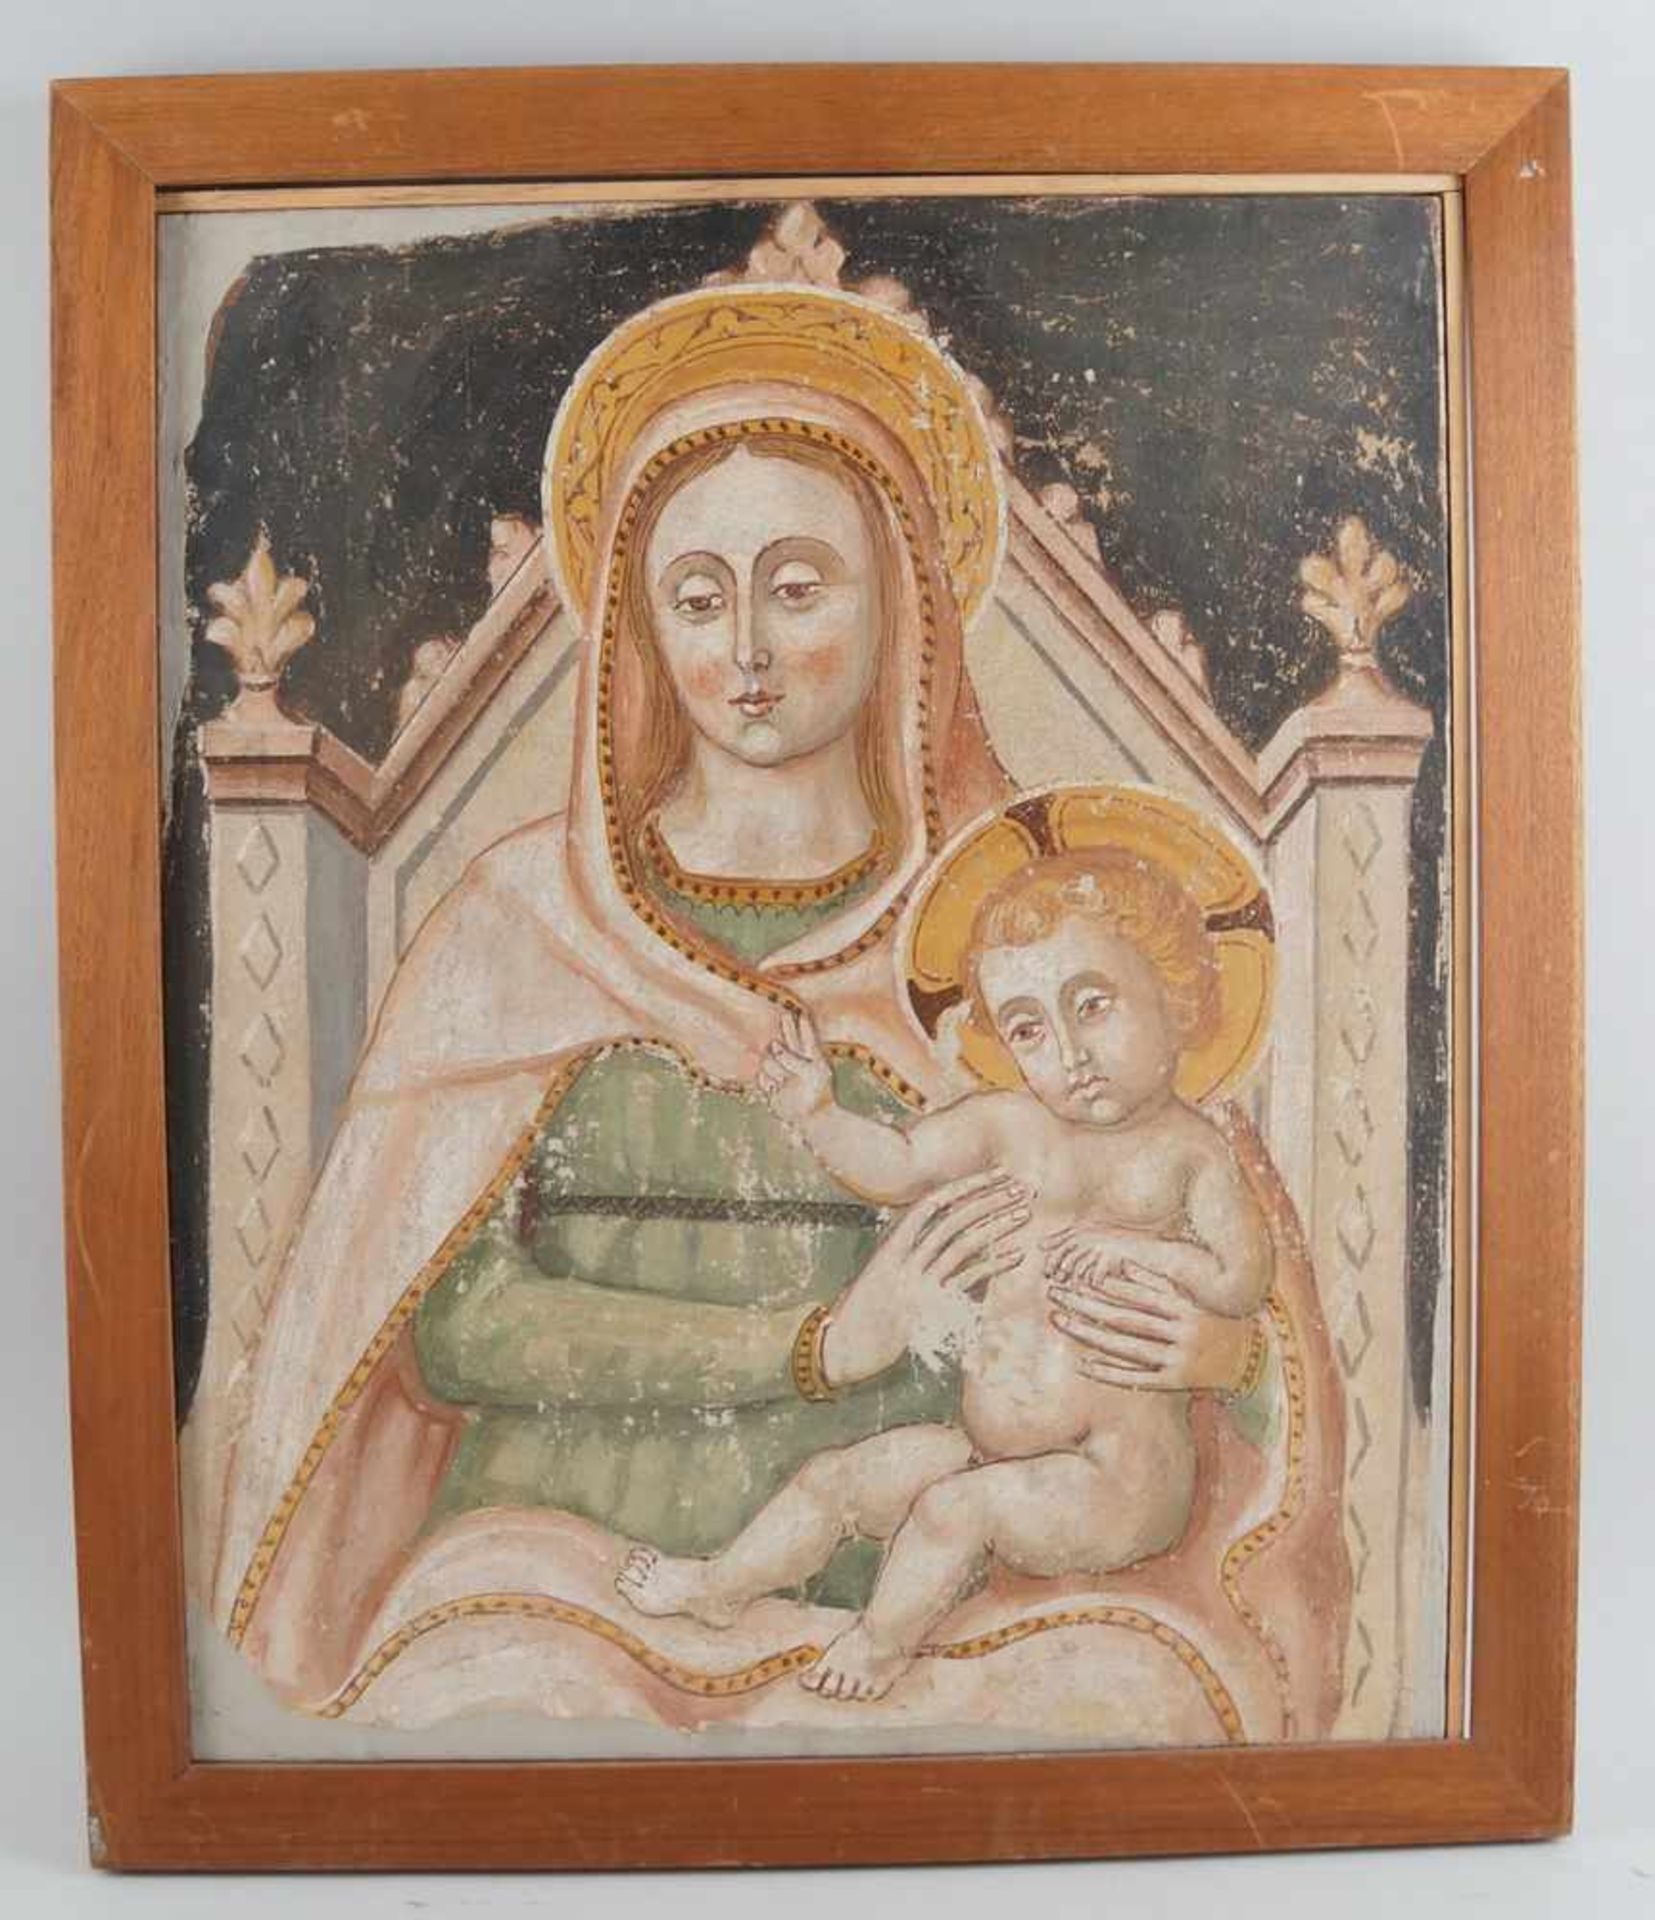 Gottes Mutter, doubliert auf Leinwand, 81 x 68 cm, Italien ?, 19. Jahrhundert ?